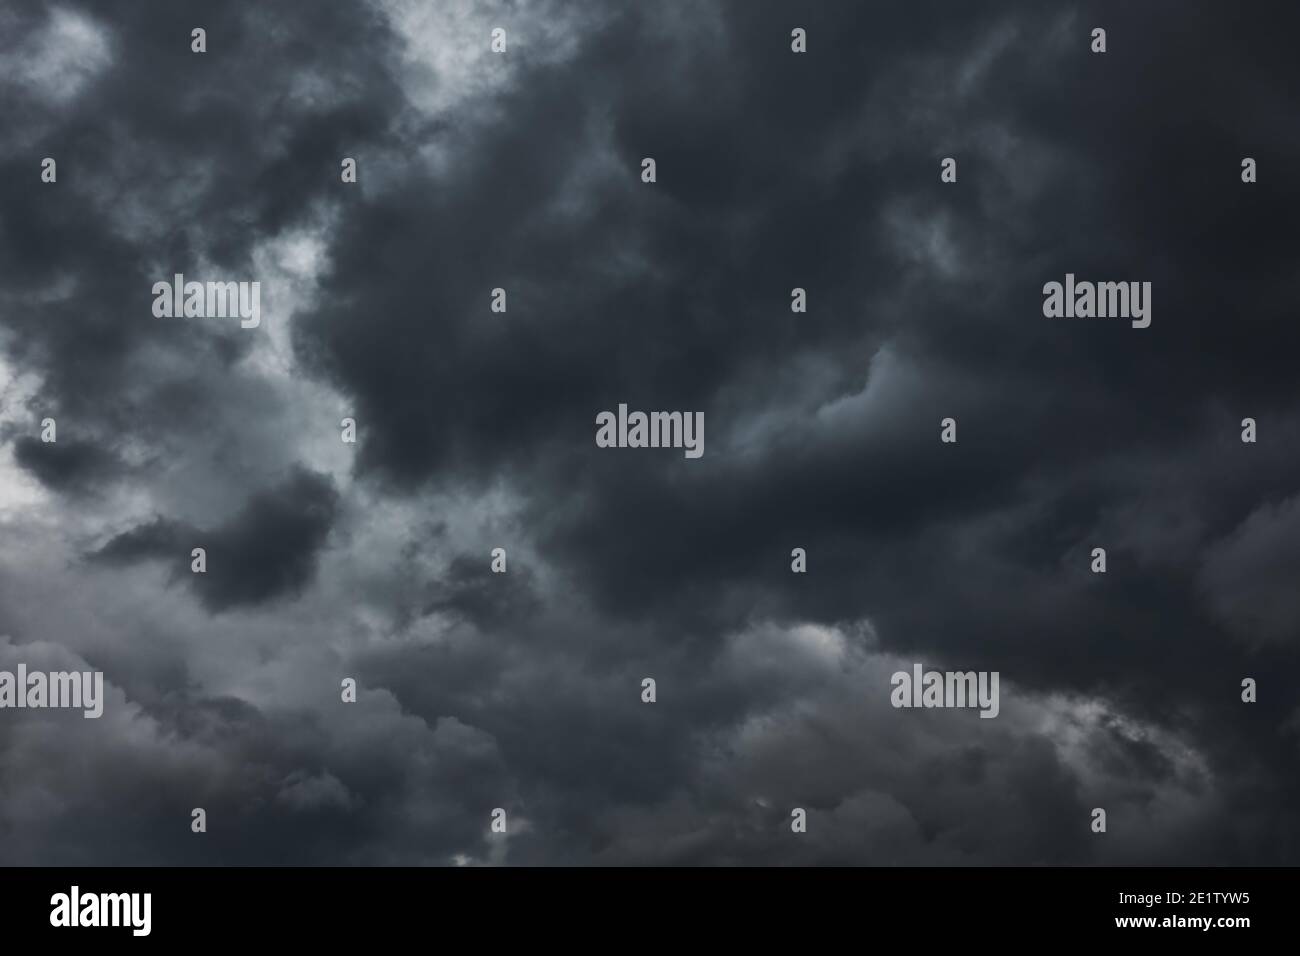 Schwarze havy stürmische Wolken, kann als Hintergrund verwendet werden Stockfoto